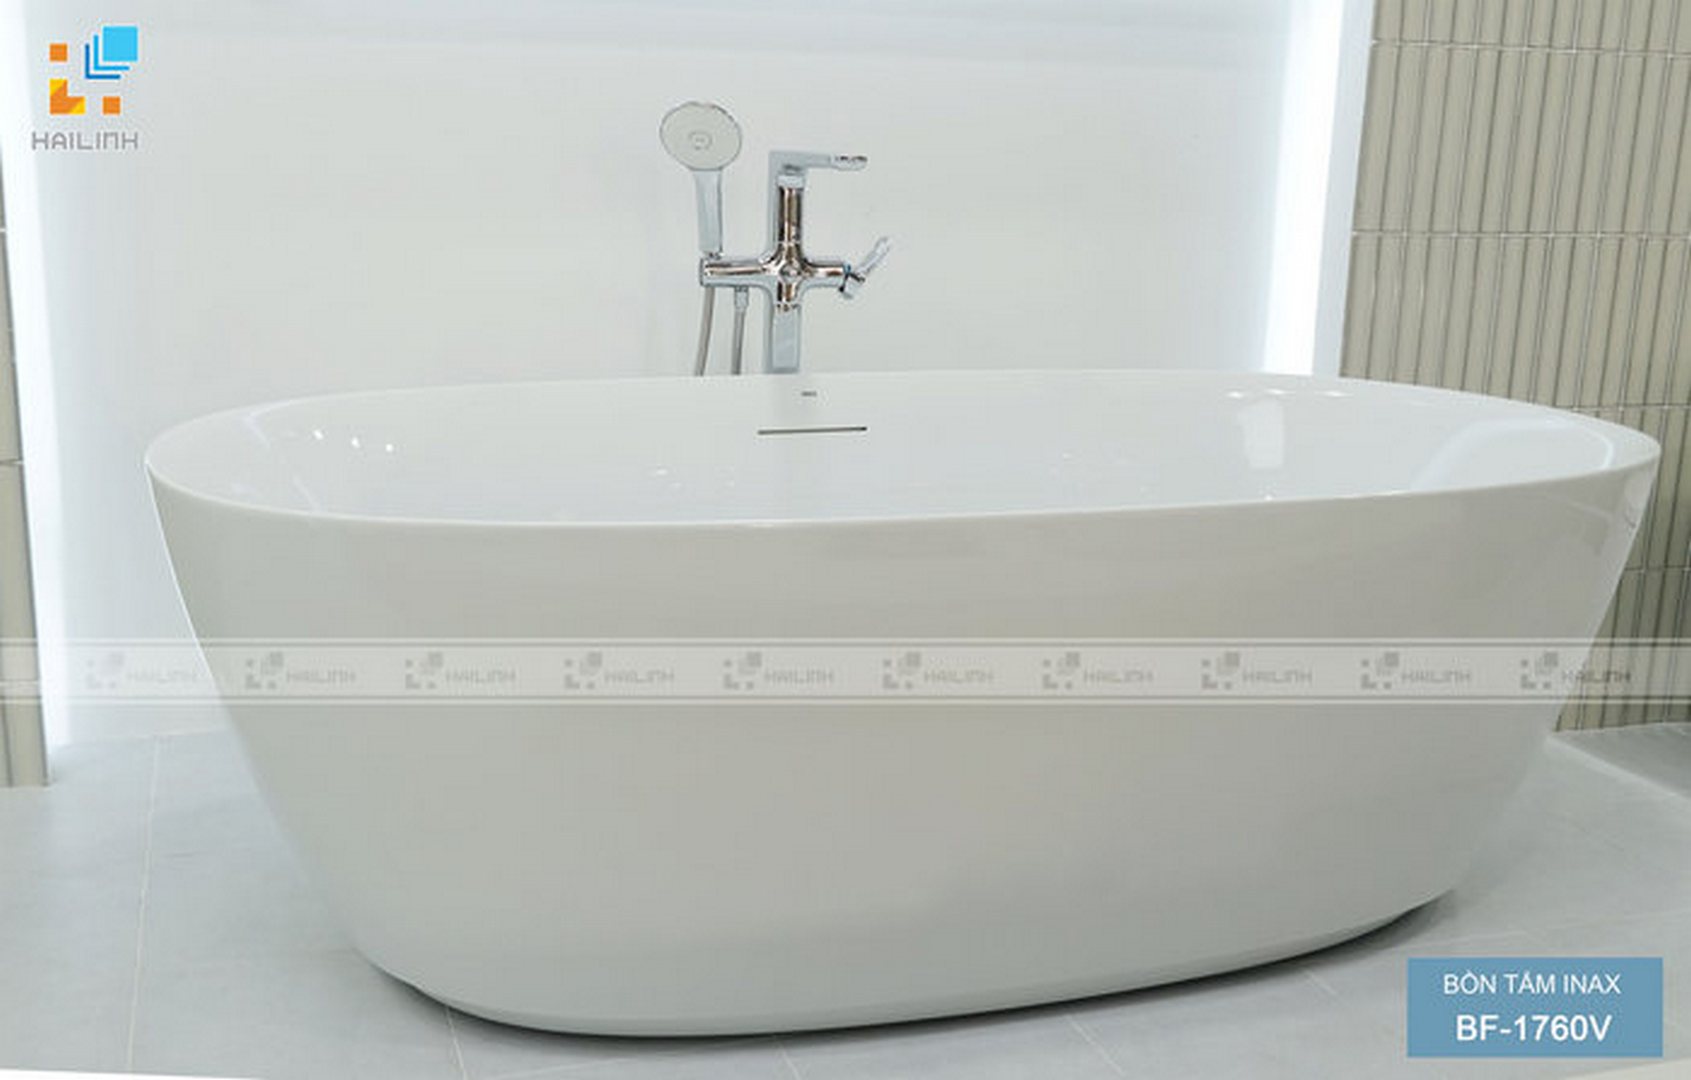 Tư vấn kích thước các loại bồn tắm Inax